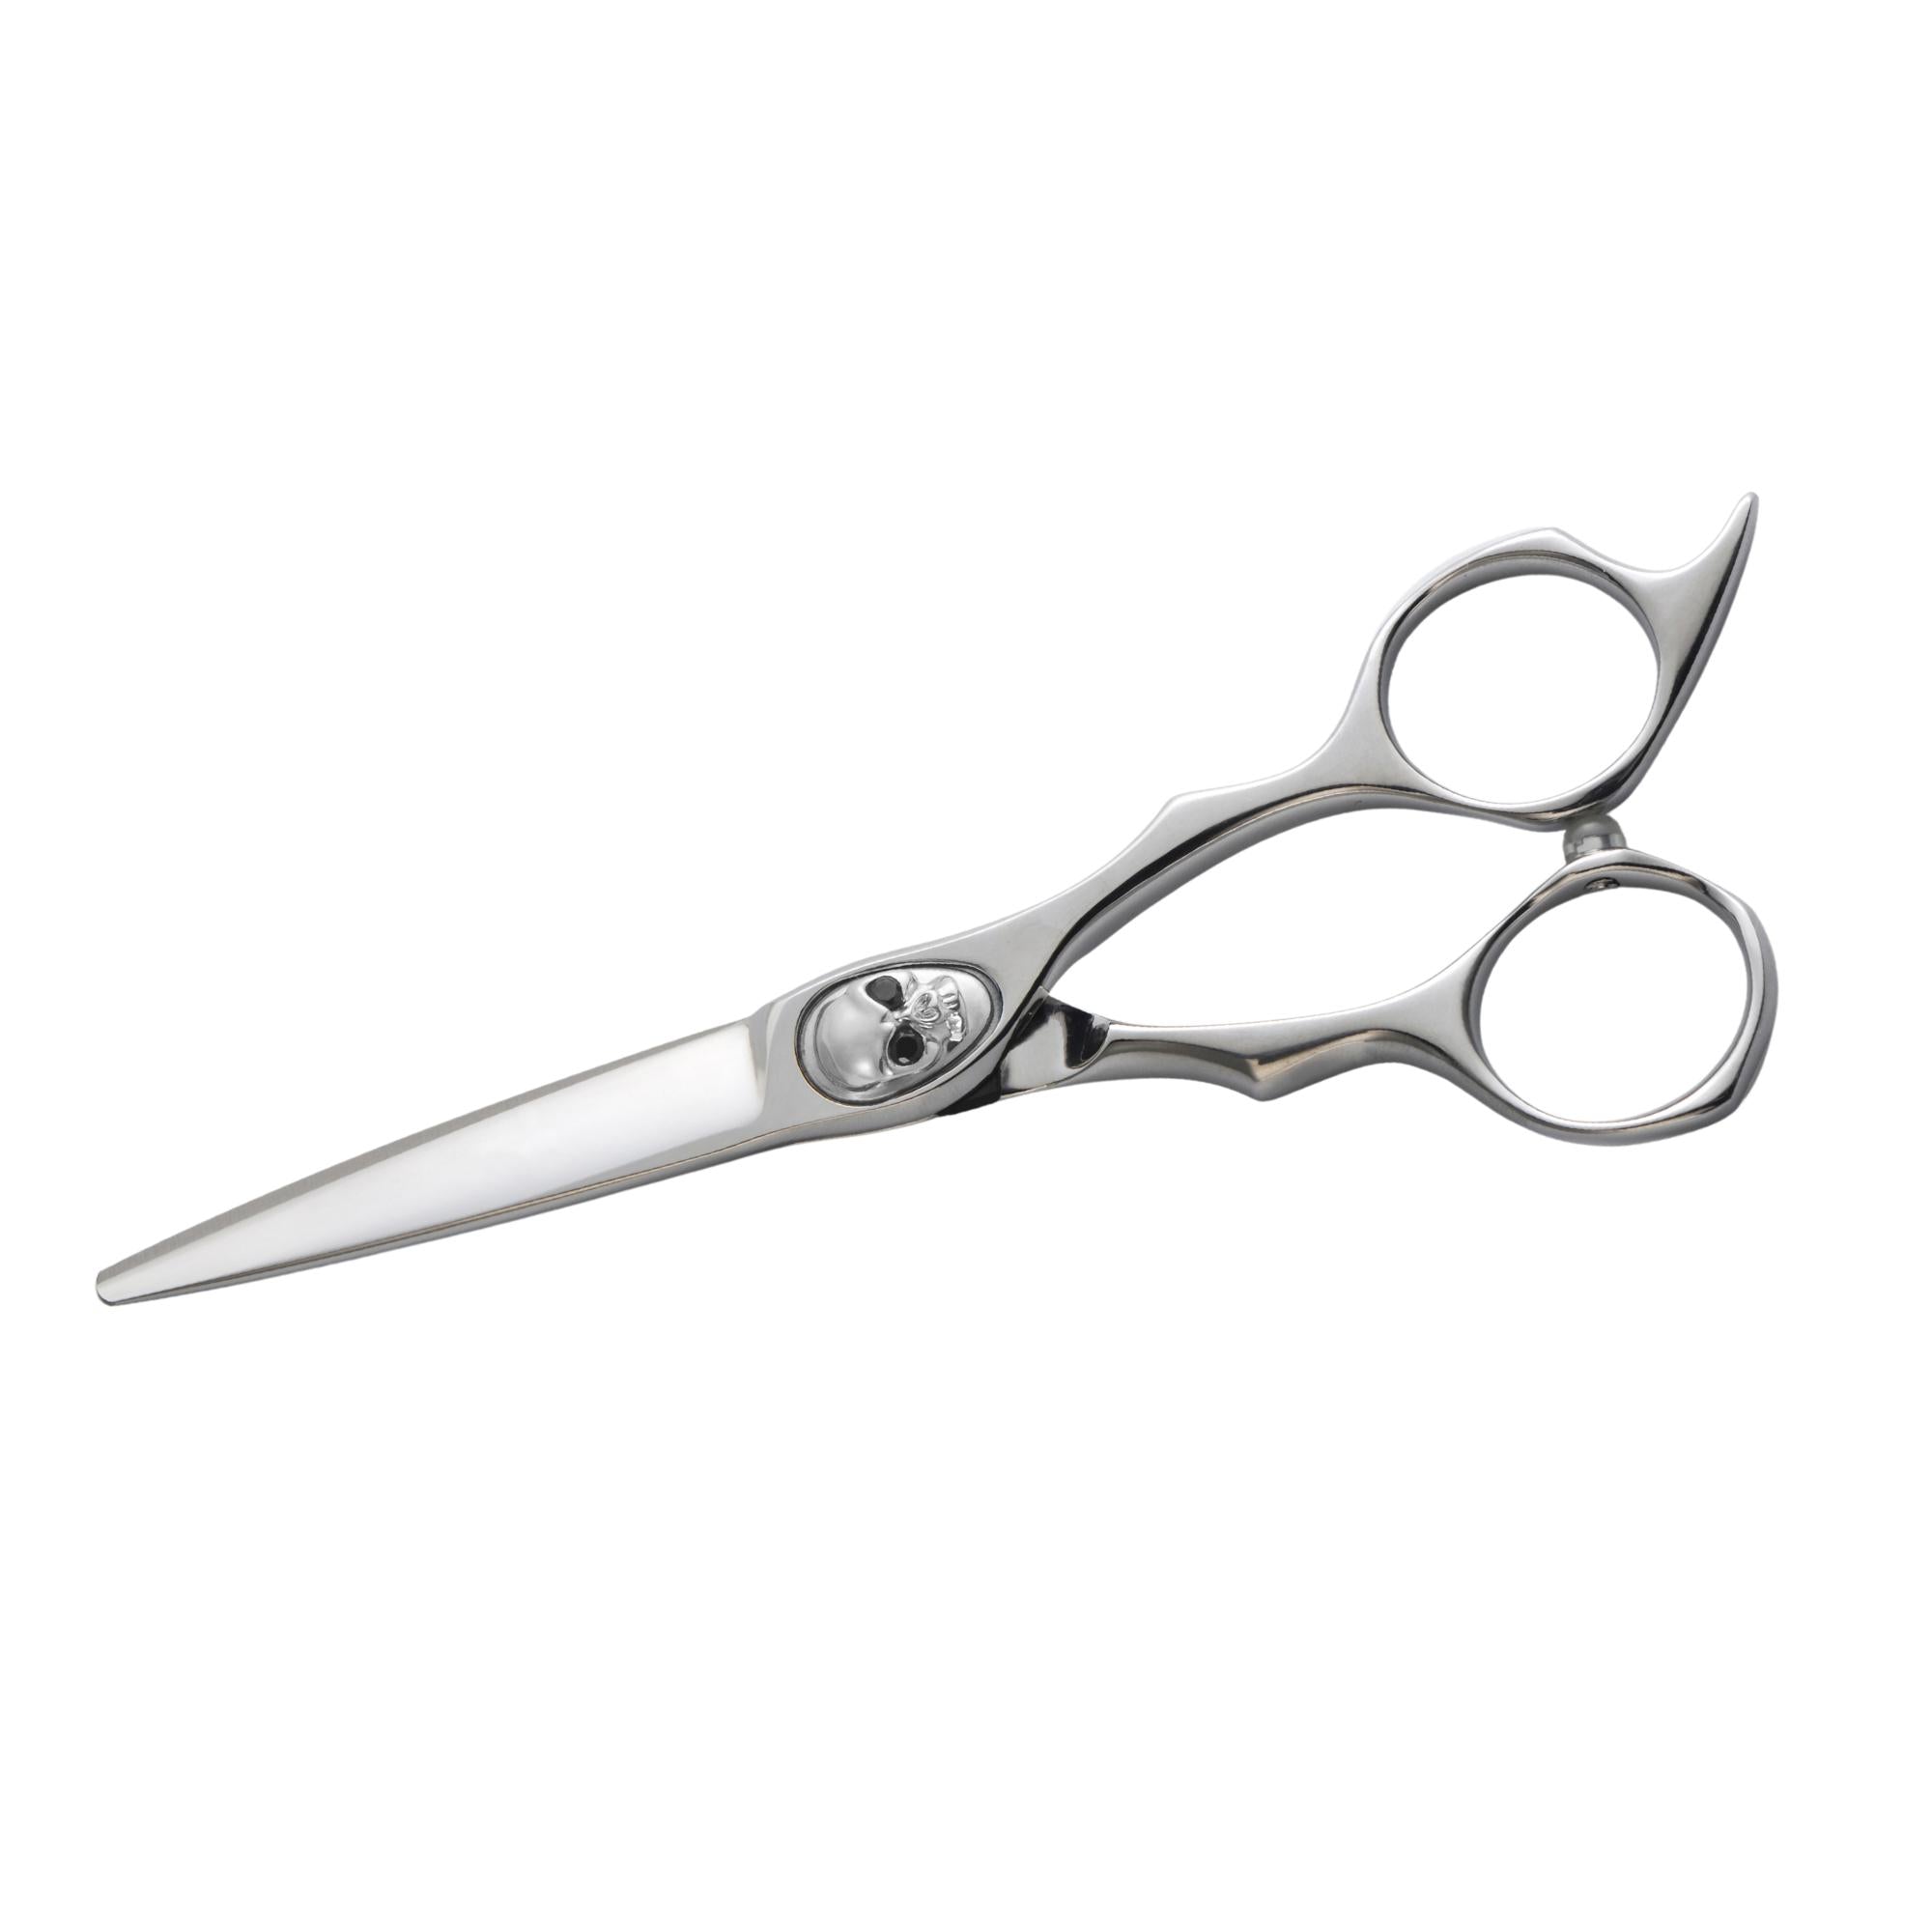 Skull Barber Scissors - Best for Professional Haircut